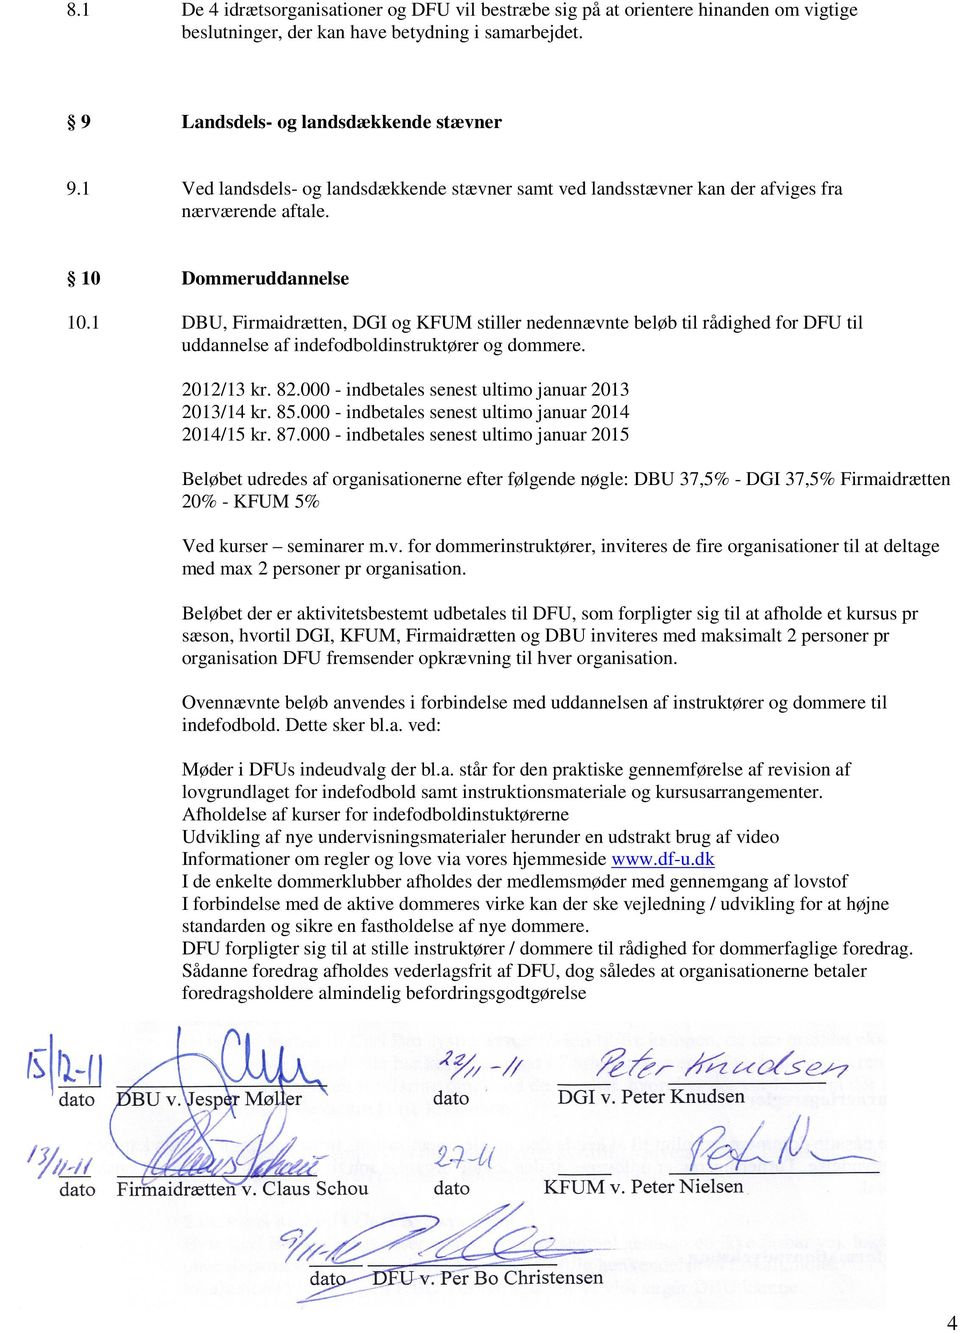 1 DBU, Firmaidrætten, DGI og KFUM stiller nedennævnte beløb til rådighed for DFU til uddannelse af indefodboldinstruktører og dommere. 2012/13 kr. 82.